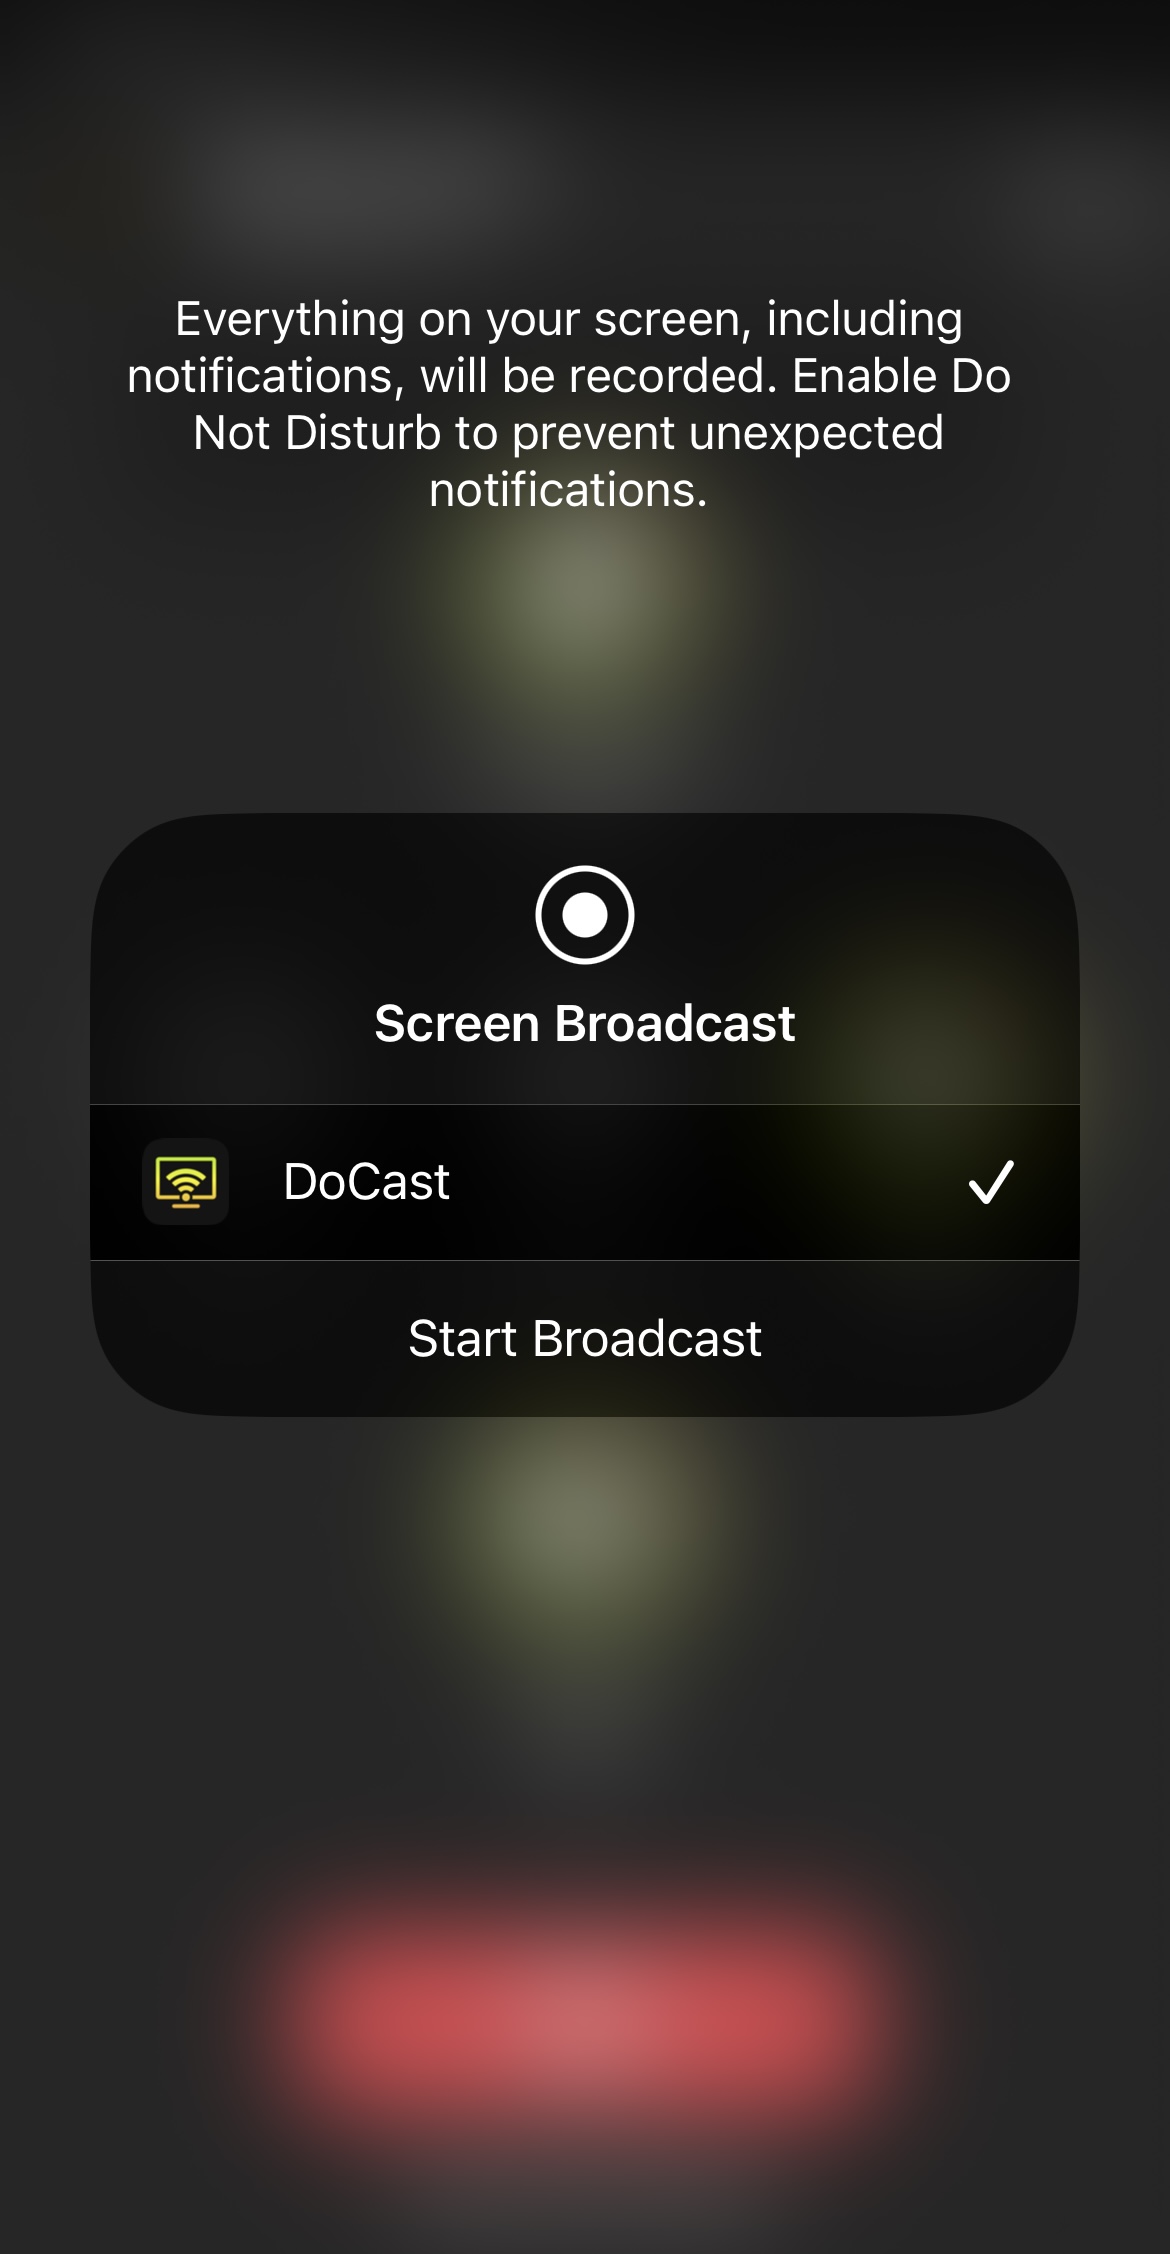 Broadcasting iPhone to Chromecast TV via DoCast